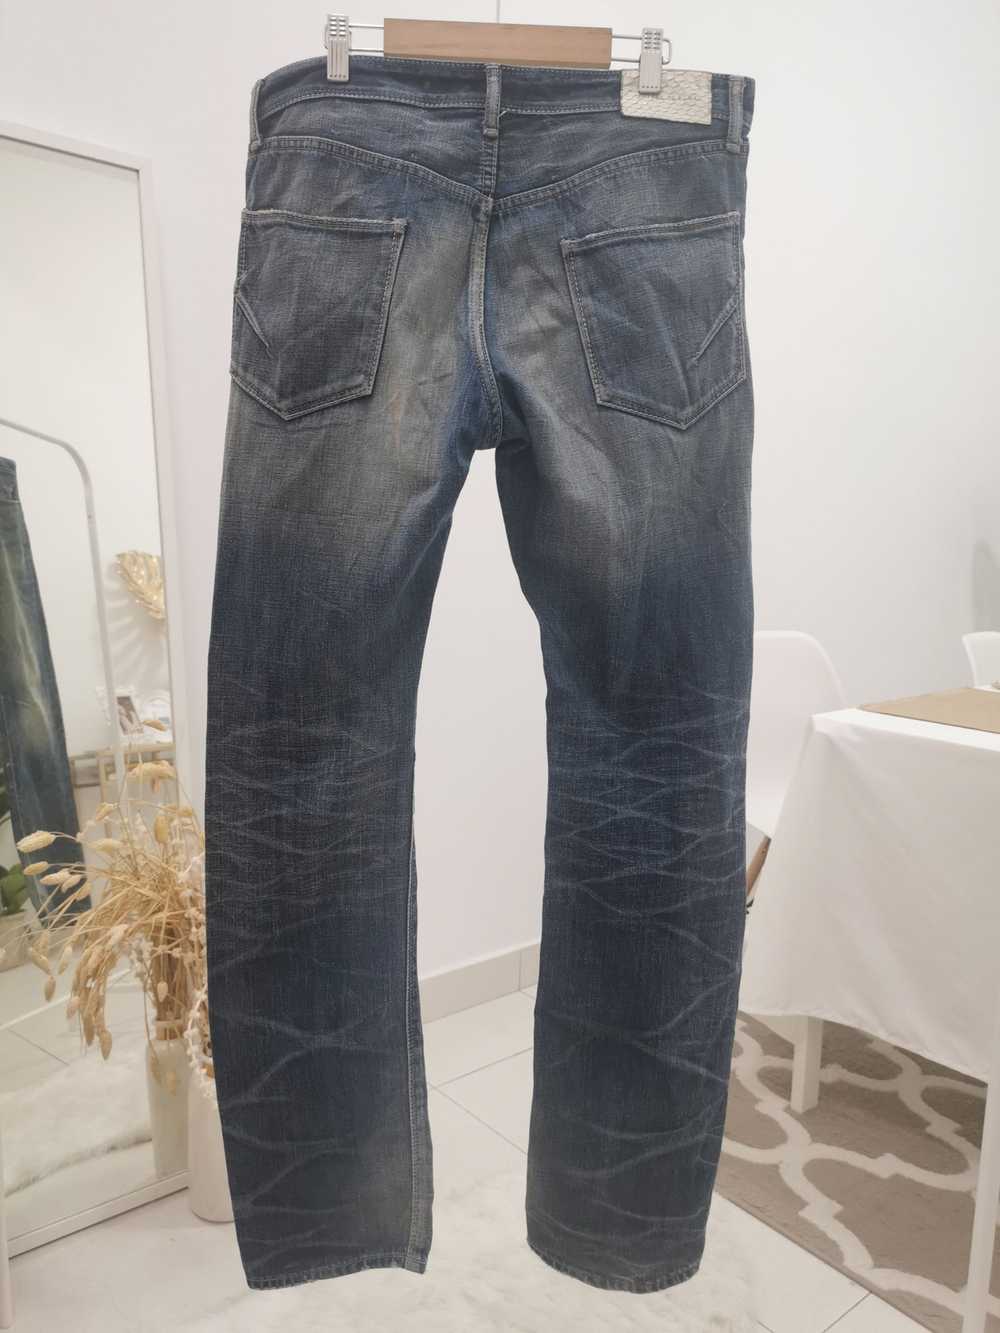 Gostar De Fuga Gostar De Fuga Selvedge denim jeans - image 2